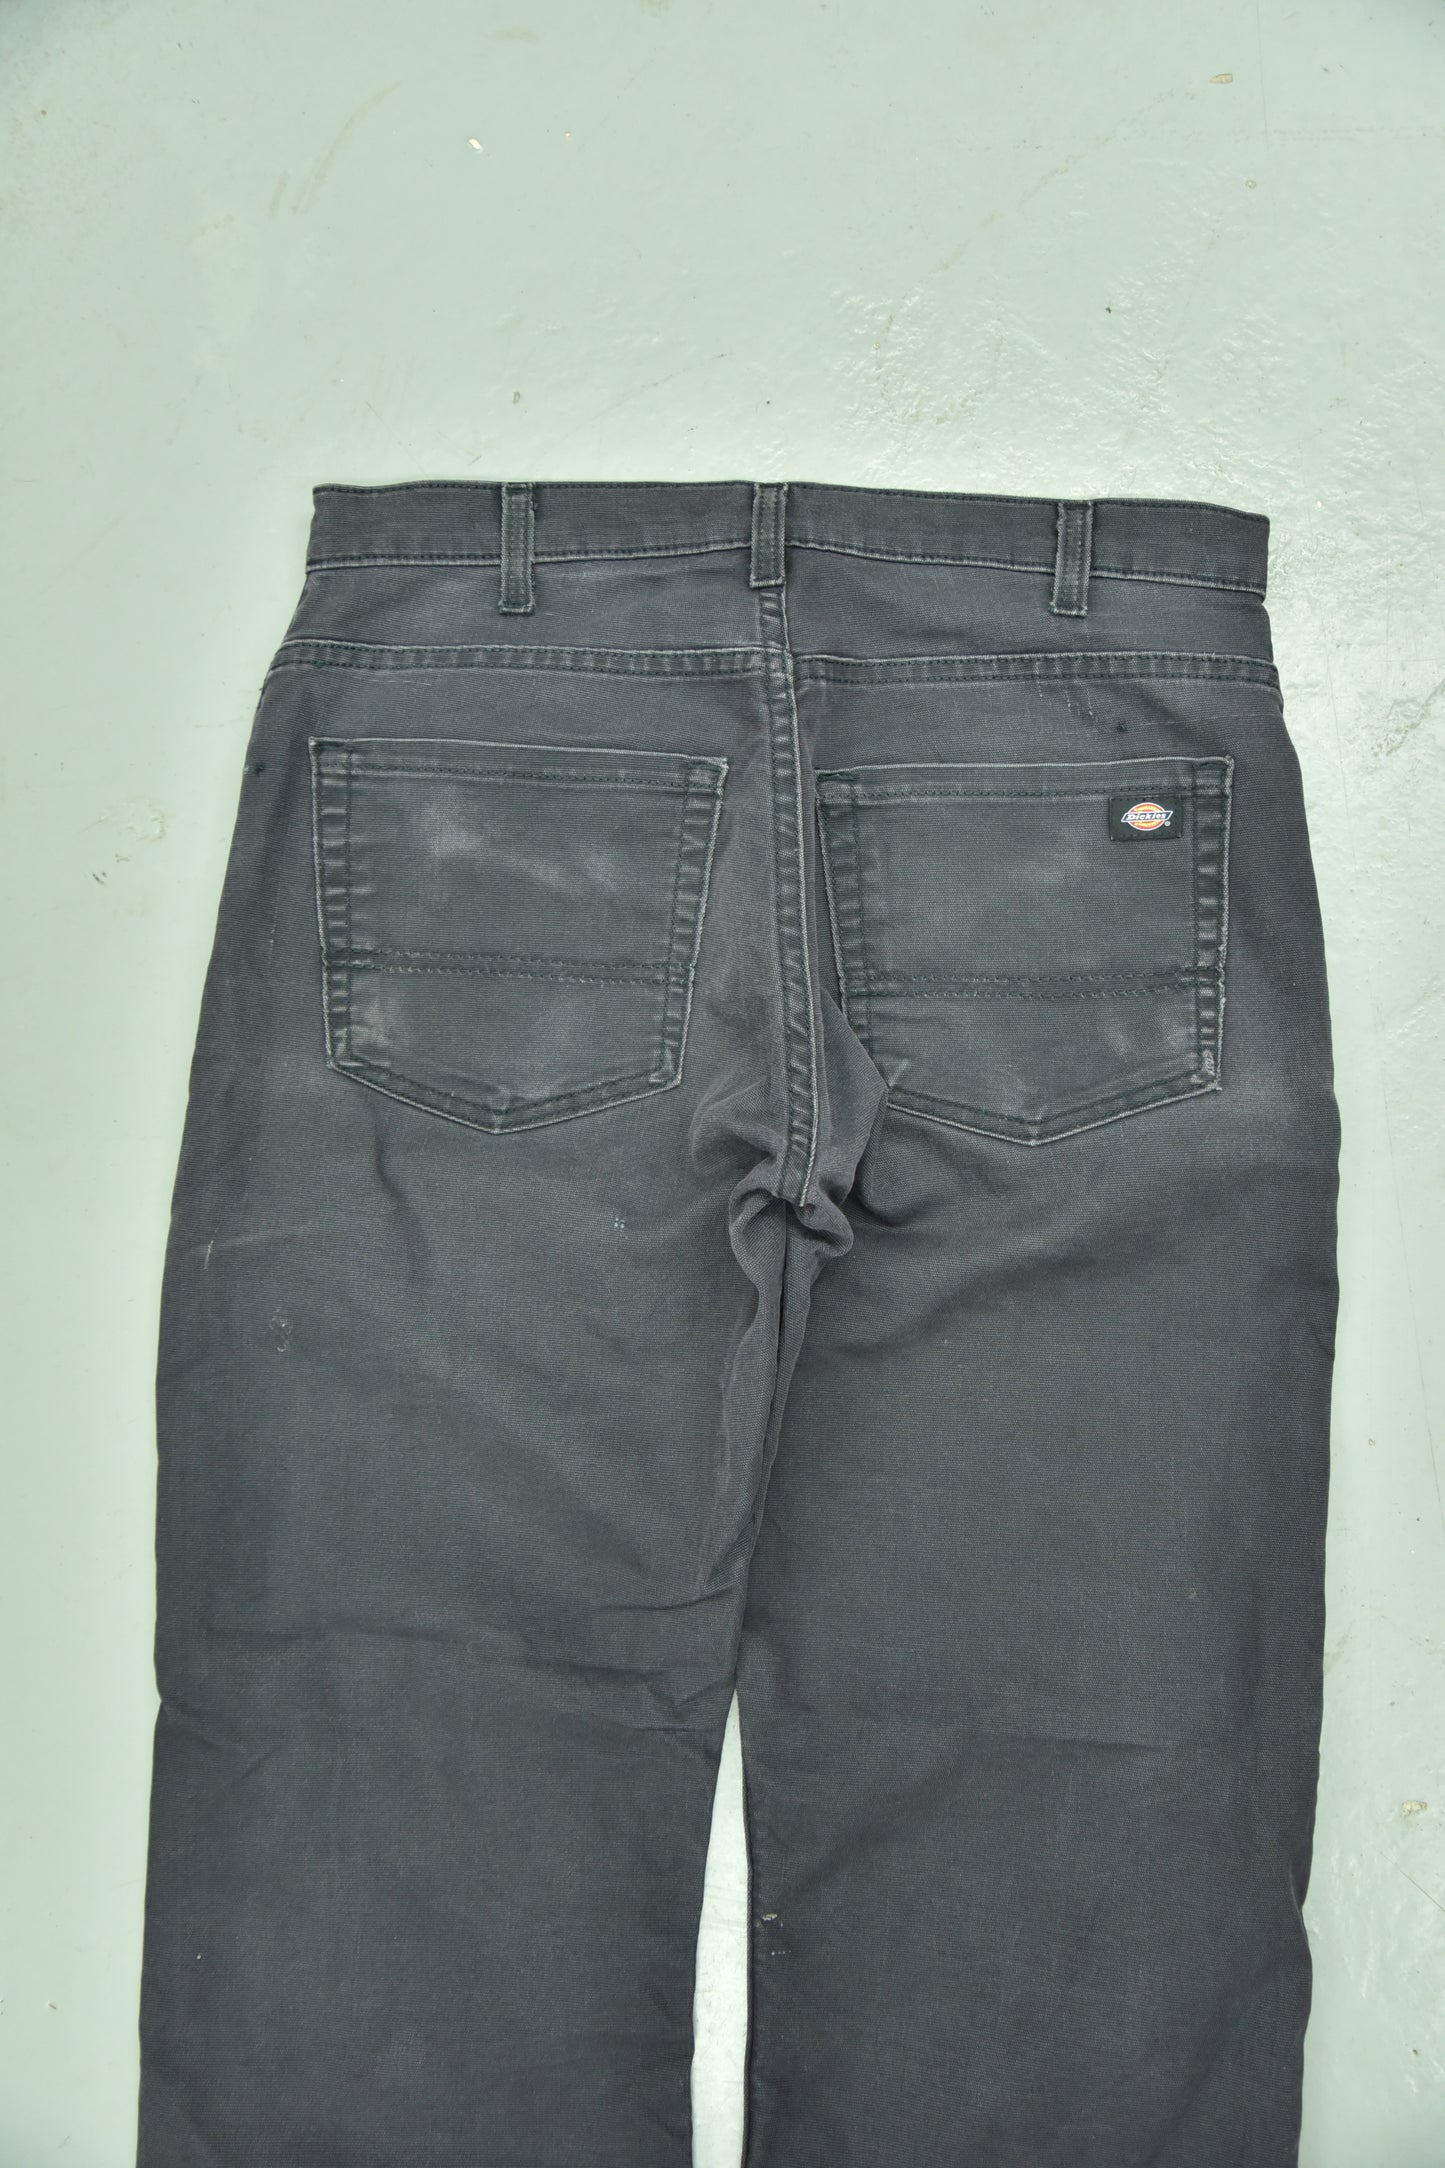 Dickies Workwear Pants Black Vintage / 32x30